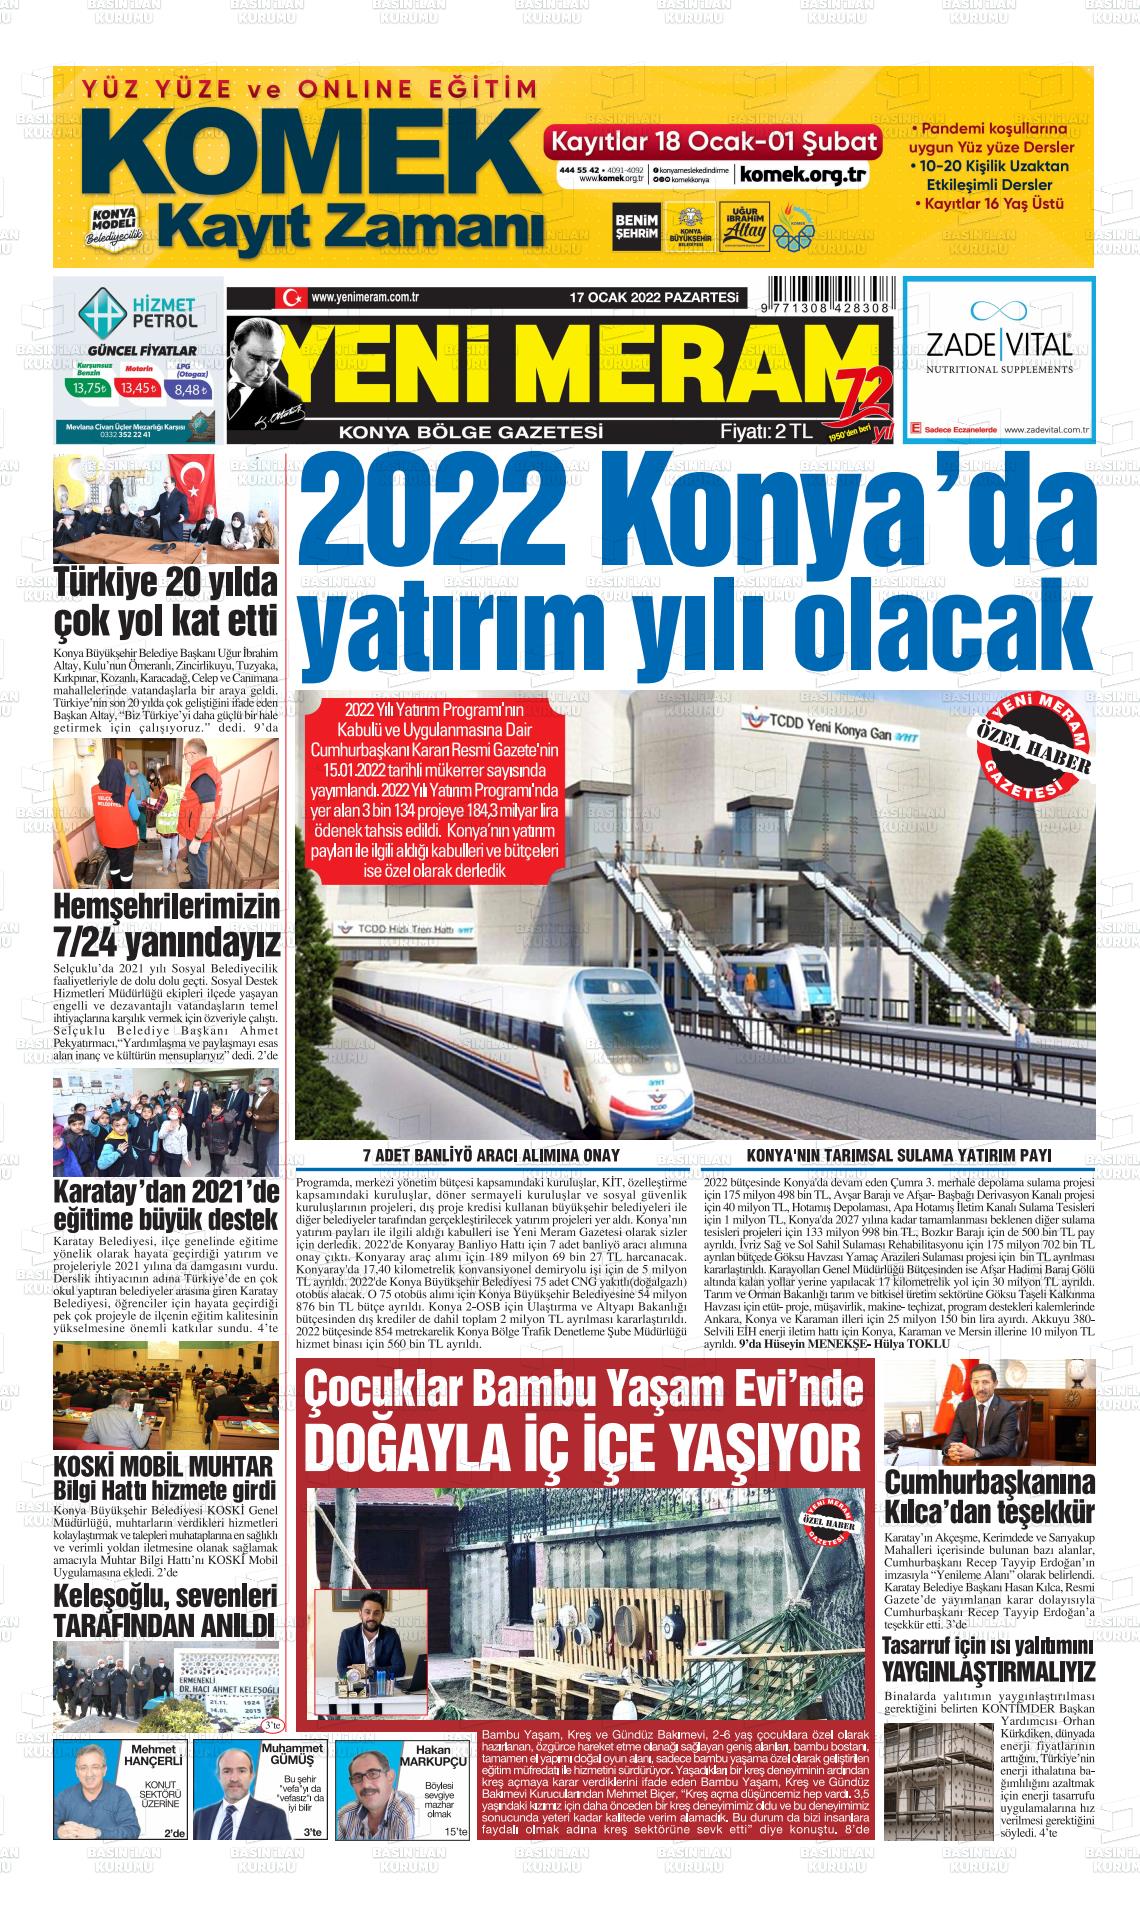 17 Ocak 2022 Yeni Meram Gazete Manşeti